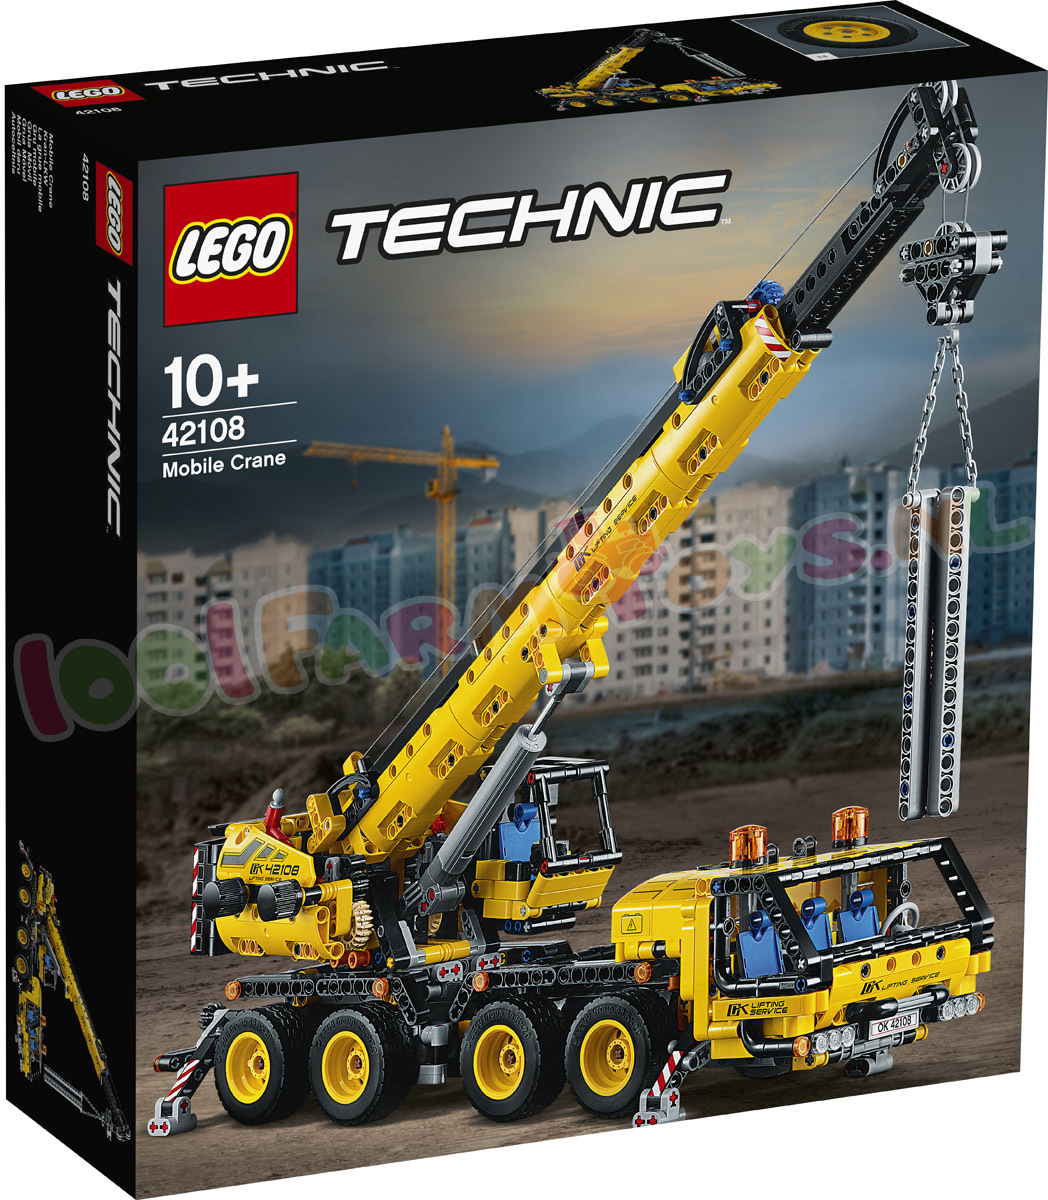 Monografie Entertainment medaillewinnaar LEGO TECHNIC Mobiele kraan - 42108 - Uitverkocht Farm - 1001Farmtoys  landbouwspeelgoed - LET OP dit product wordt niet meer geproduceerd door  LEGO OP